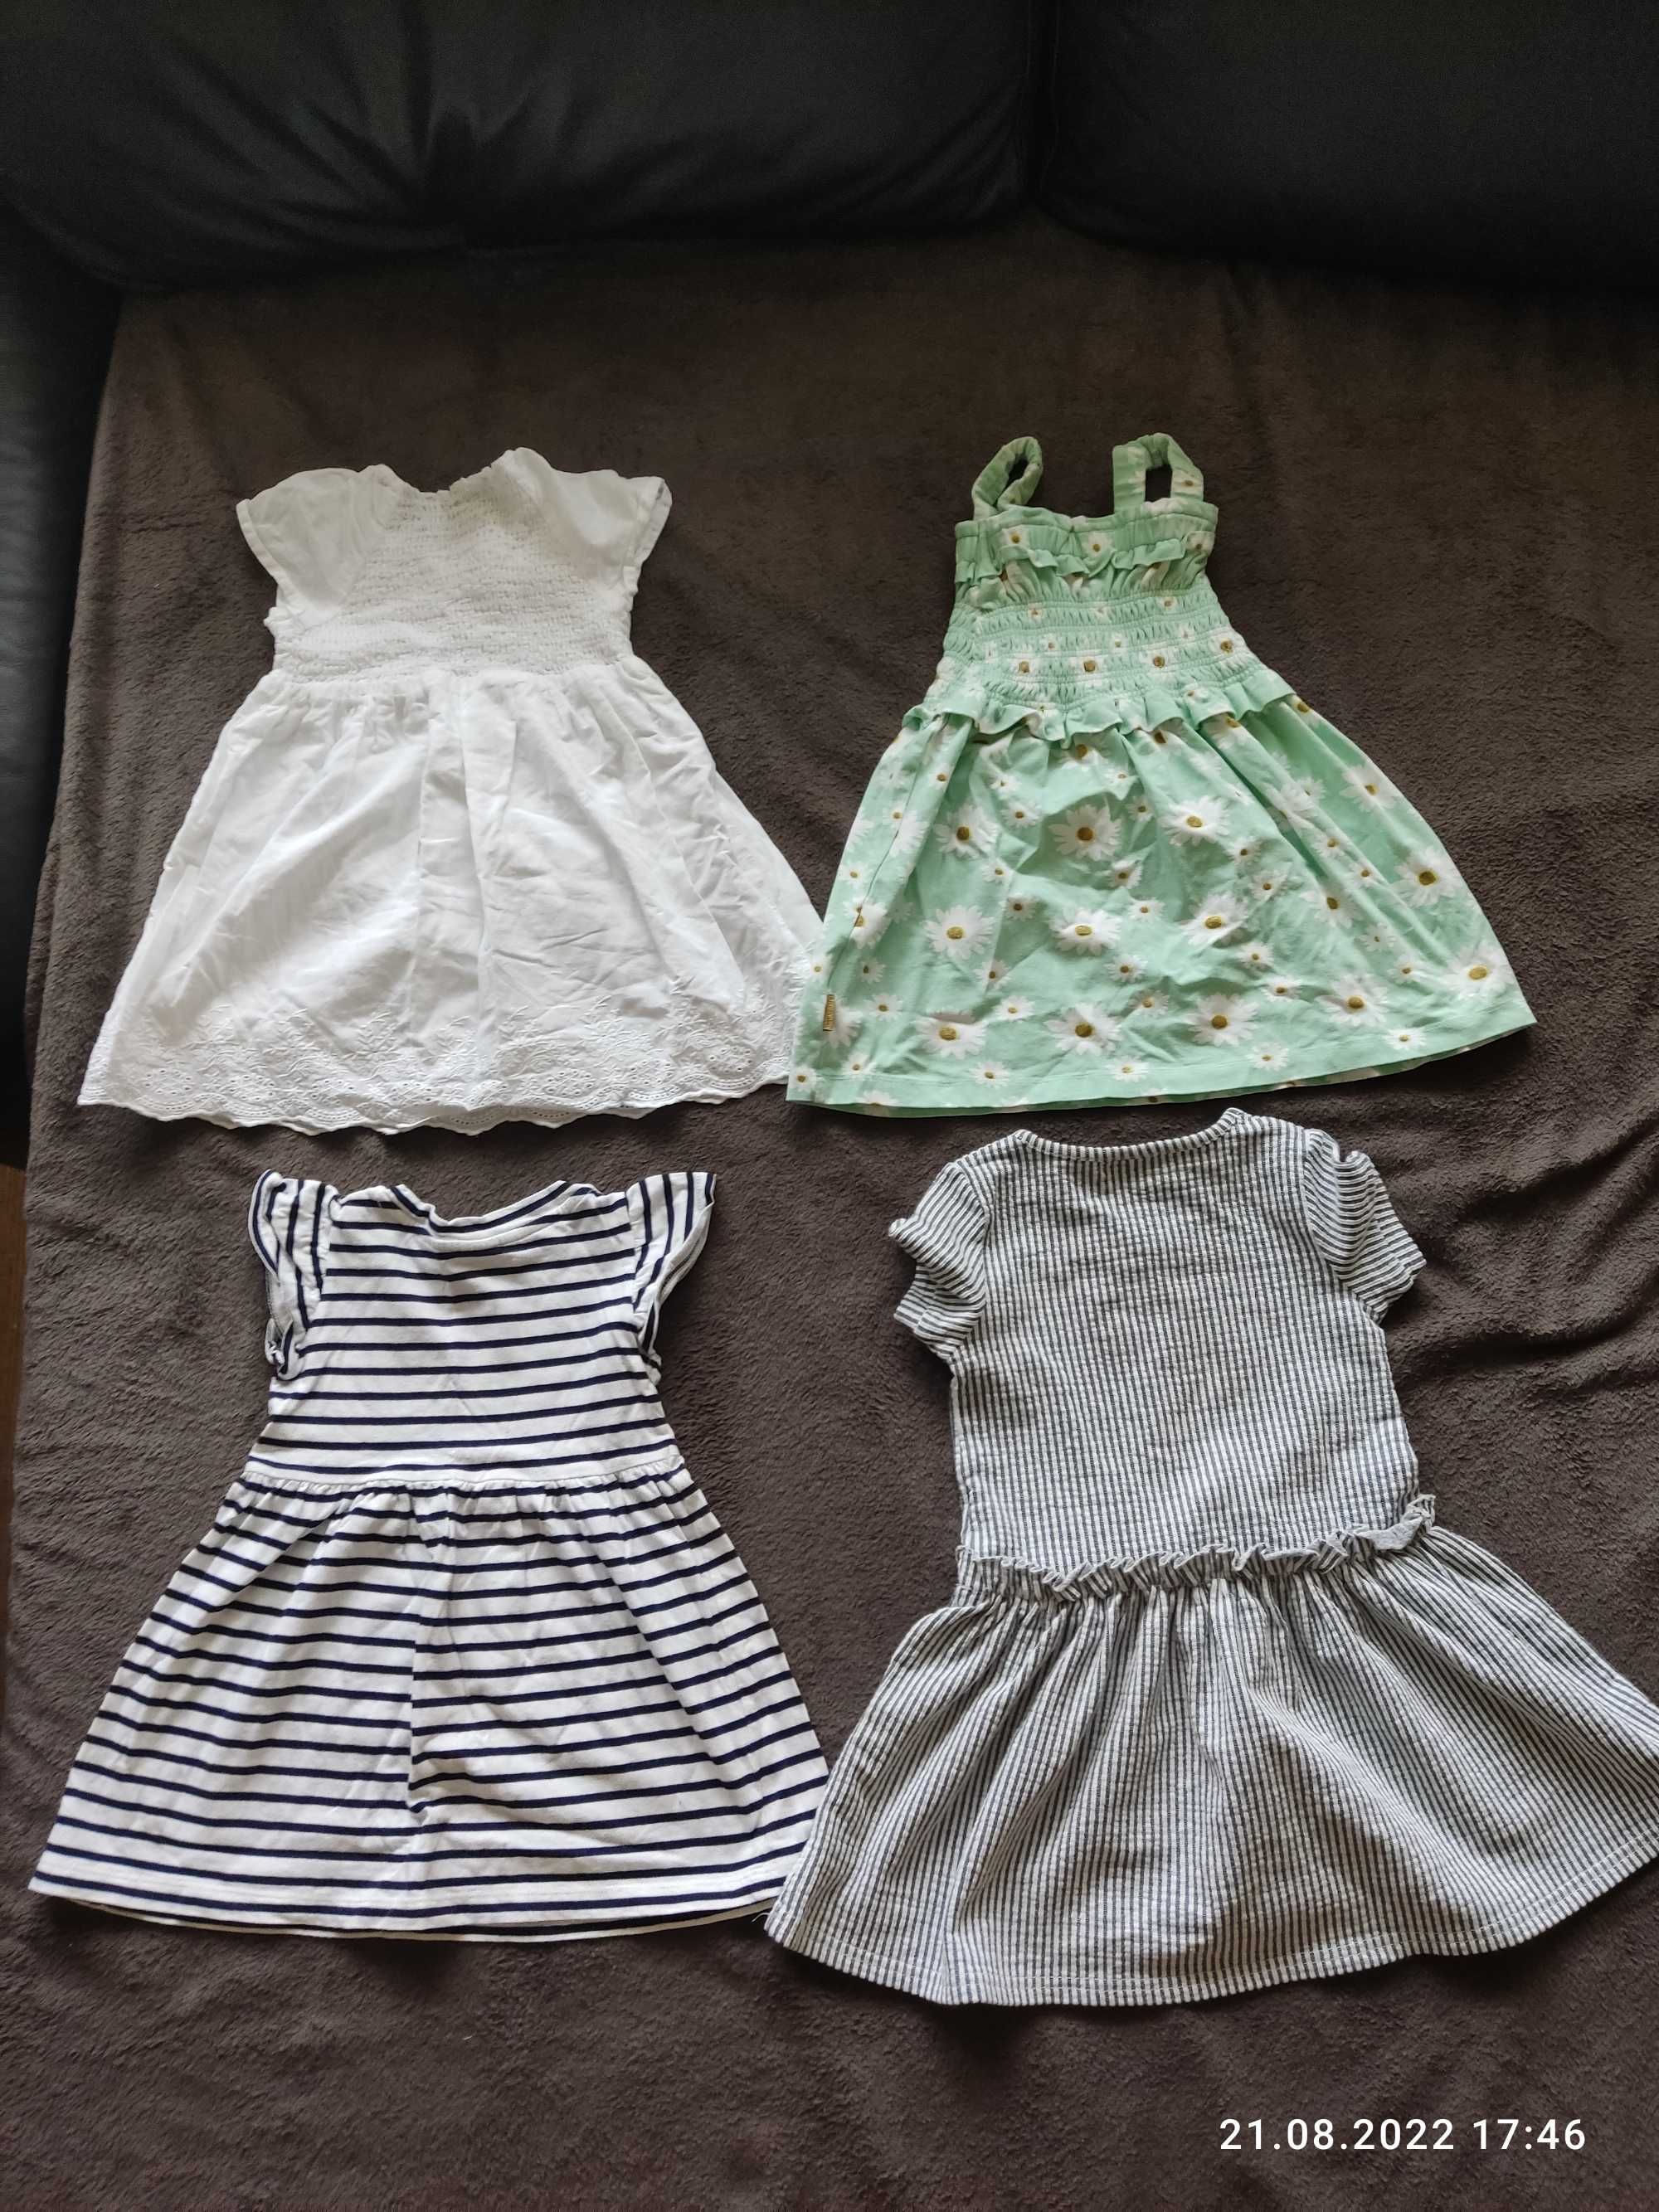 Zestaw 4 markowych sukienek dla dziewczynki w wieku 2 lat (r.92)